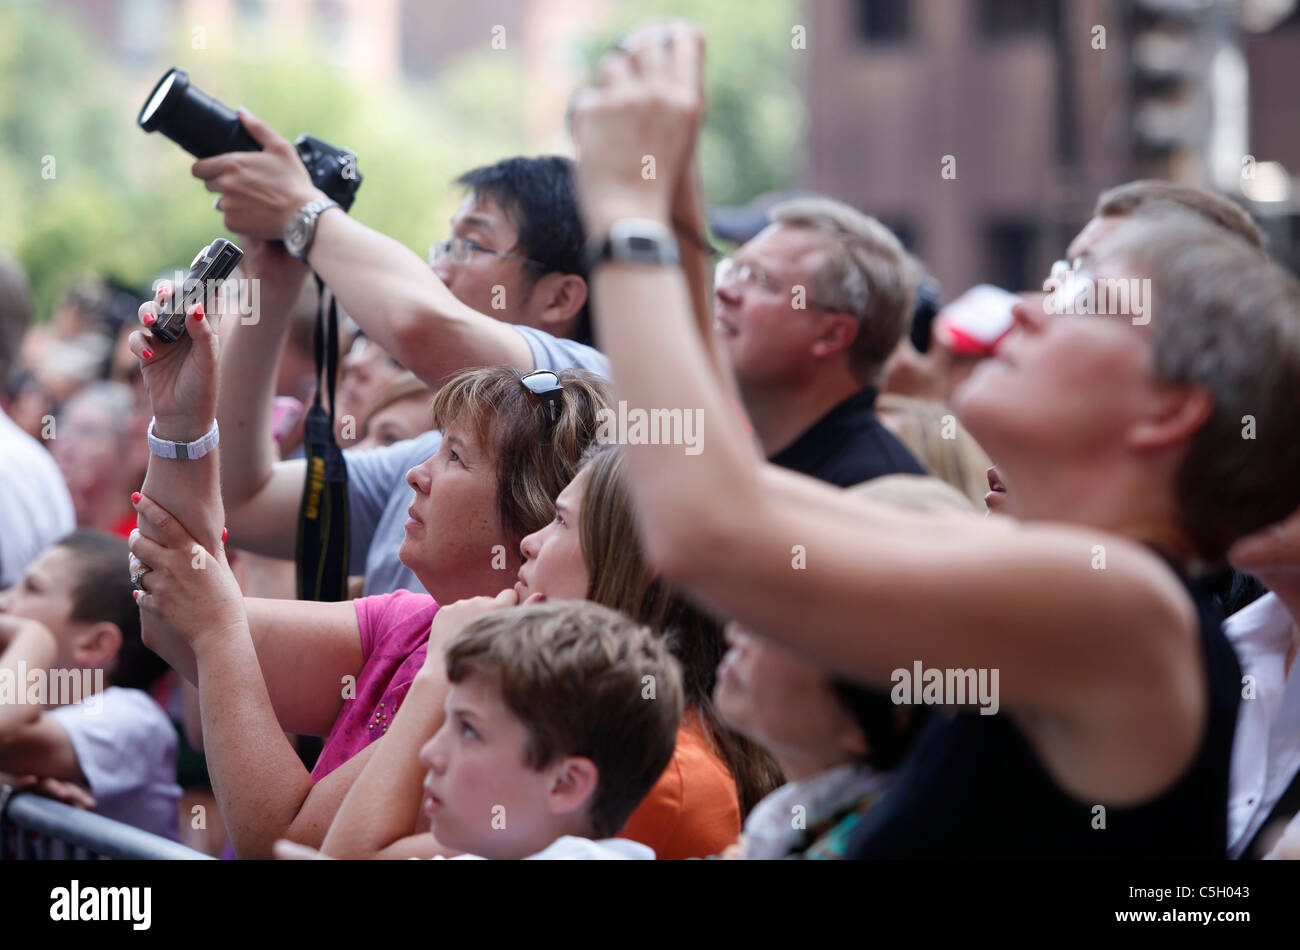 Multitud de personas tomando fotografías Foto de stock